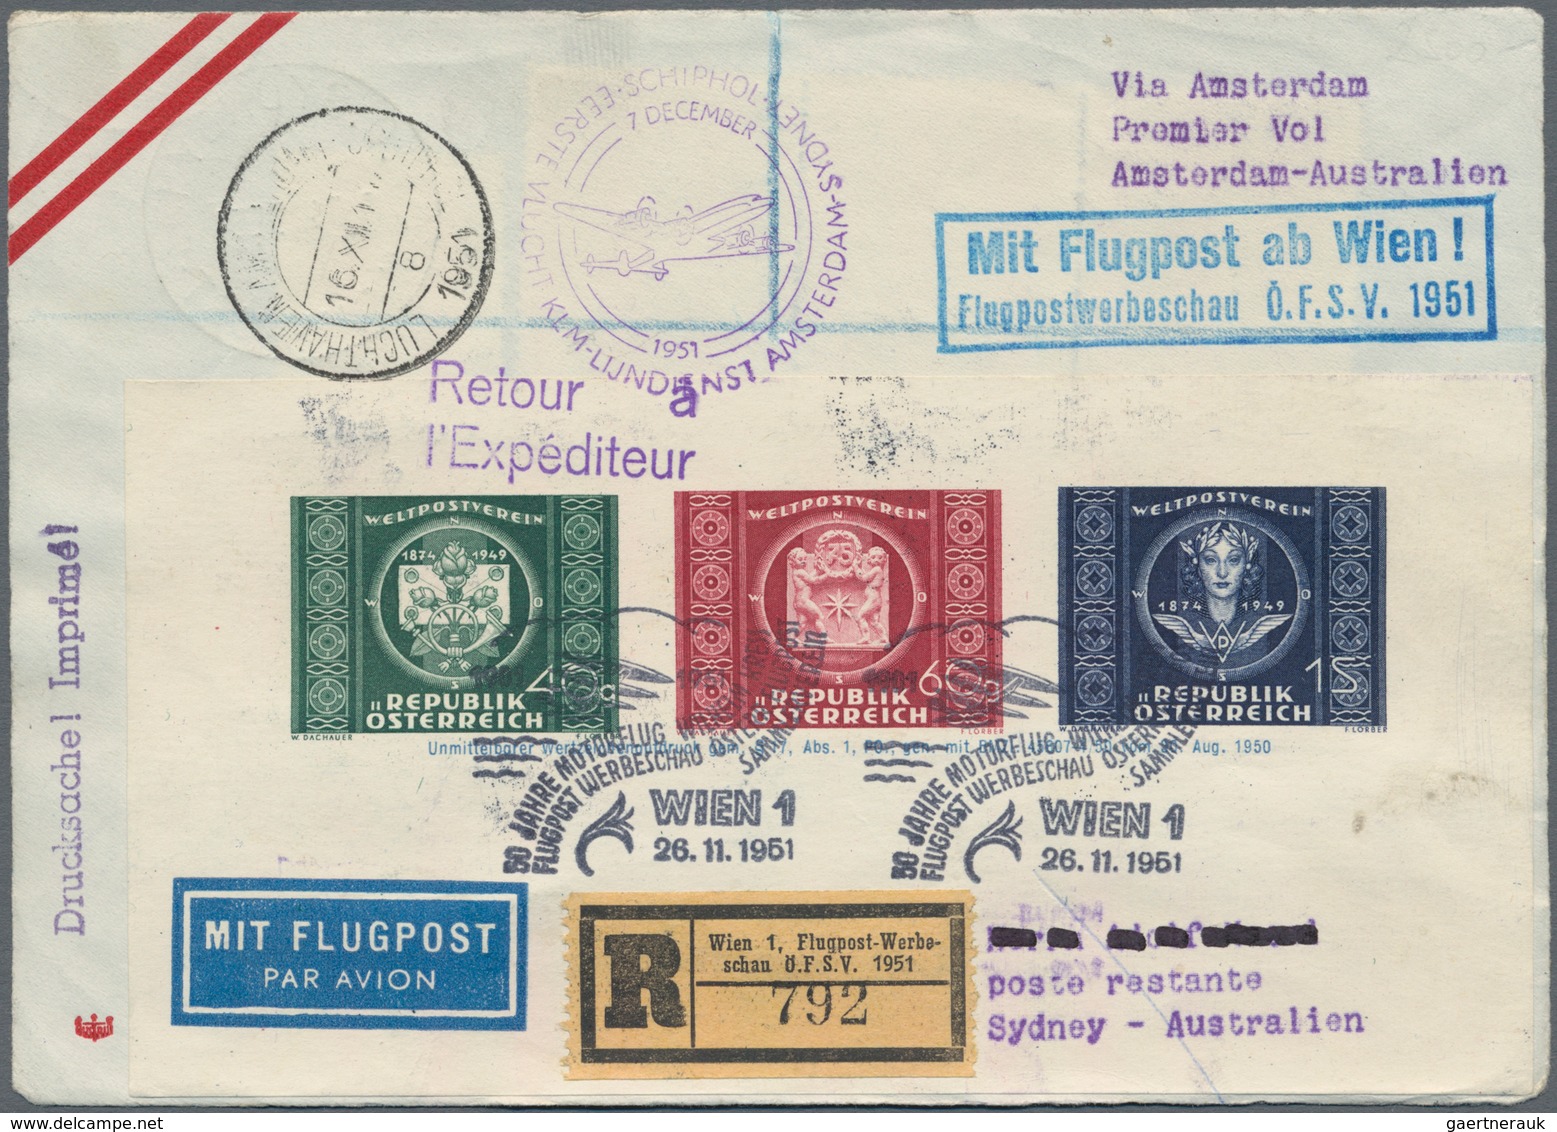 Flugpost Europa: 1946/1958, vielseitige Partie von ca. 85 Flugpost-Briefen und -Karten mit nur besse